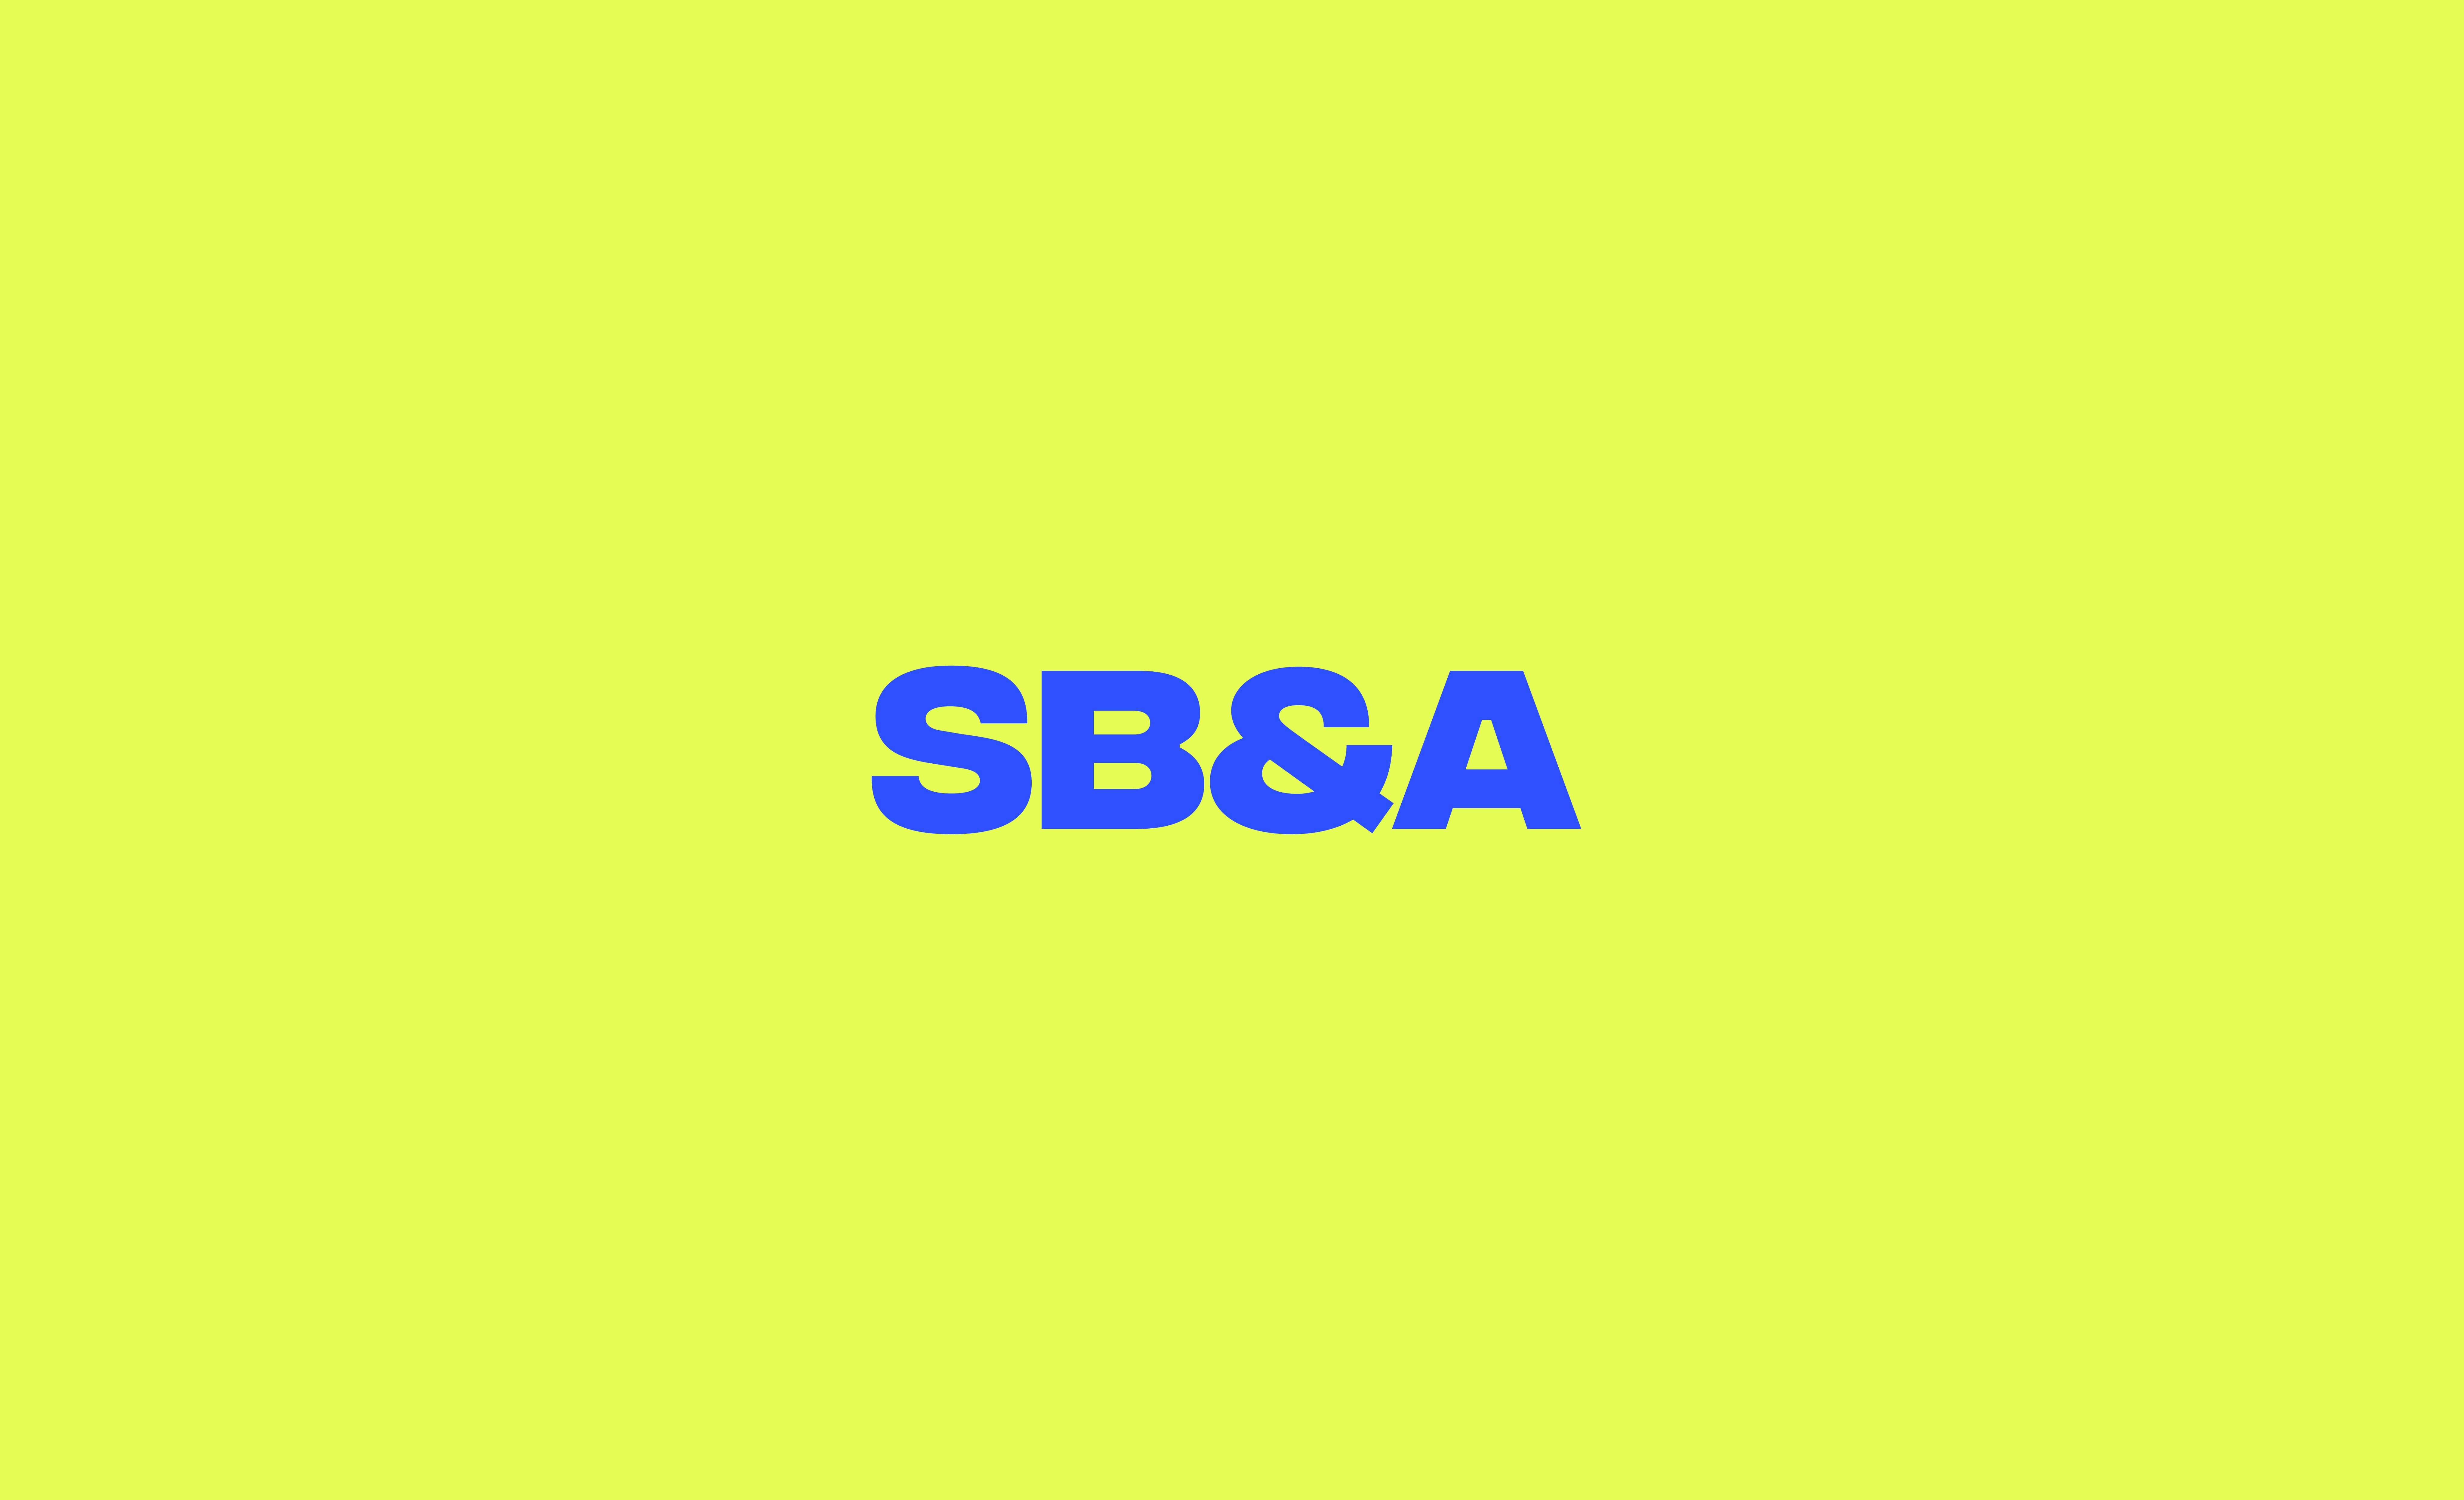 SB&A Rebrand